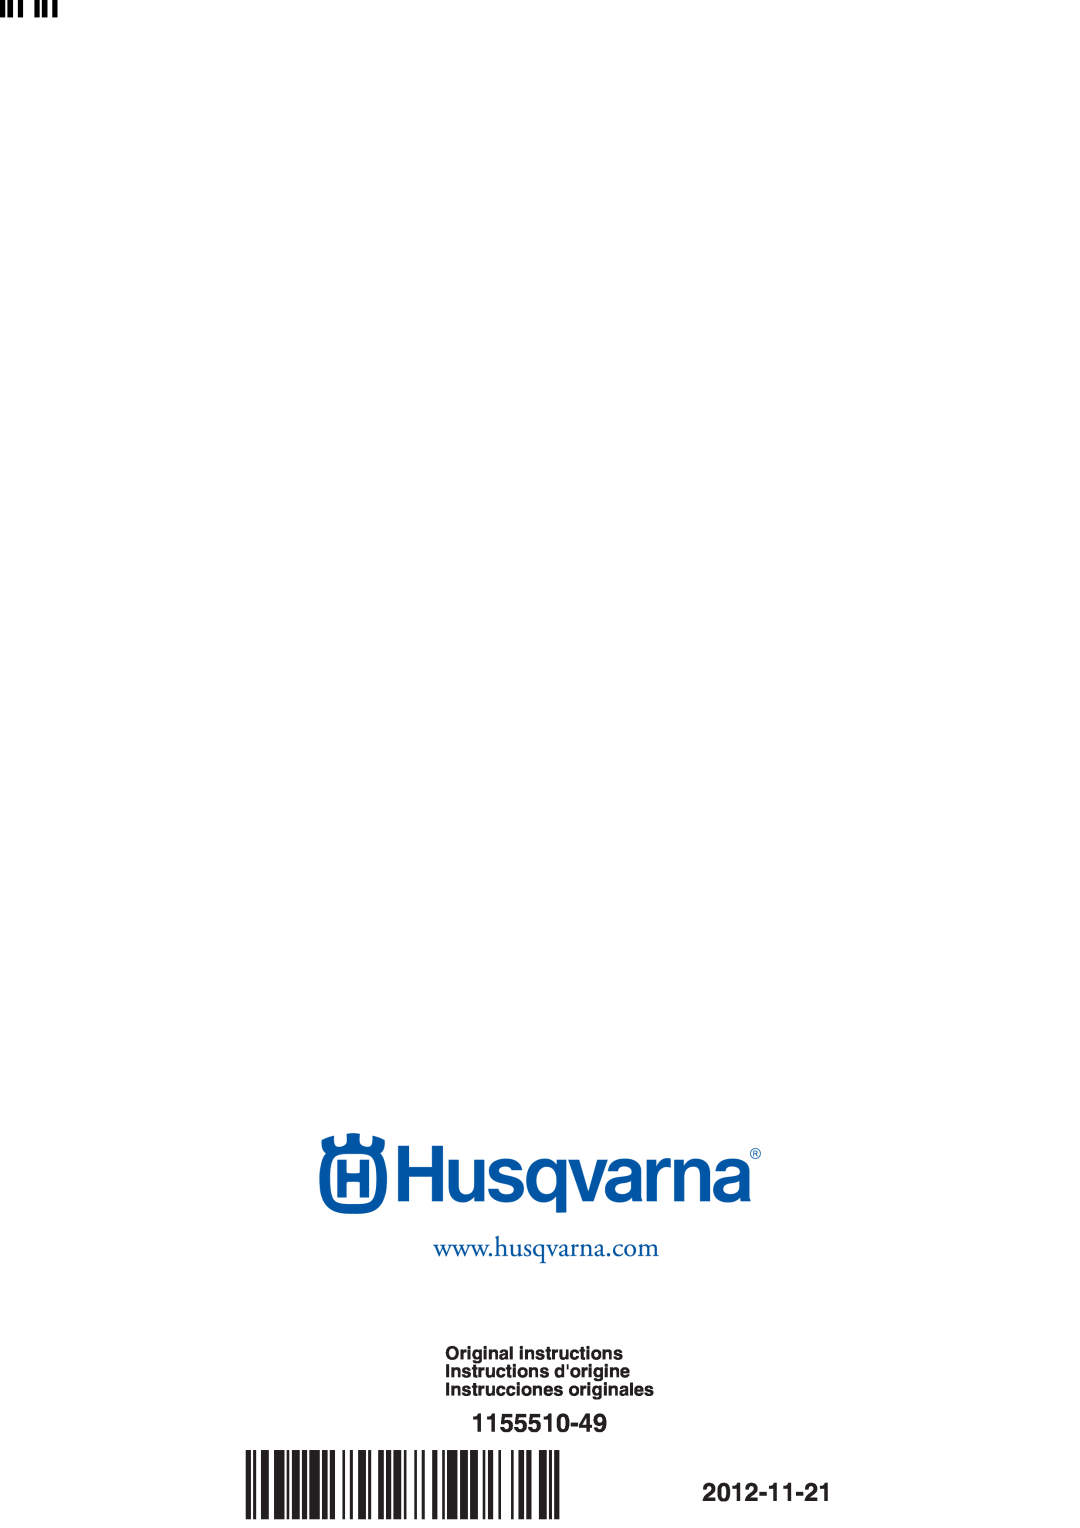 Husqvarna R120S 1155510-49, Original instructions Instructions dorigine Instrucciones originales, ´z+WS$¶9d¨ ´z+WS$¶9d¨ 